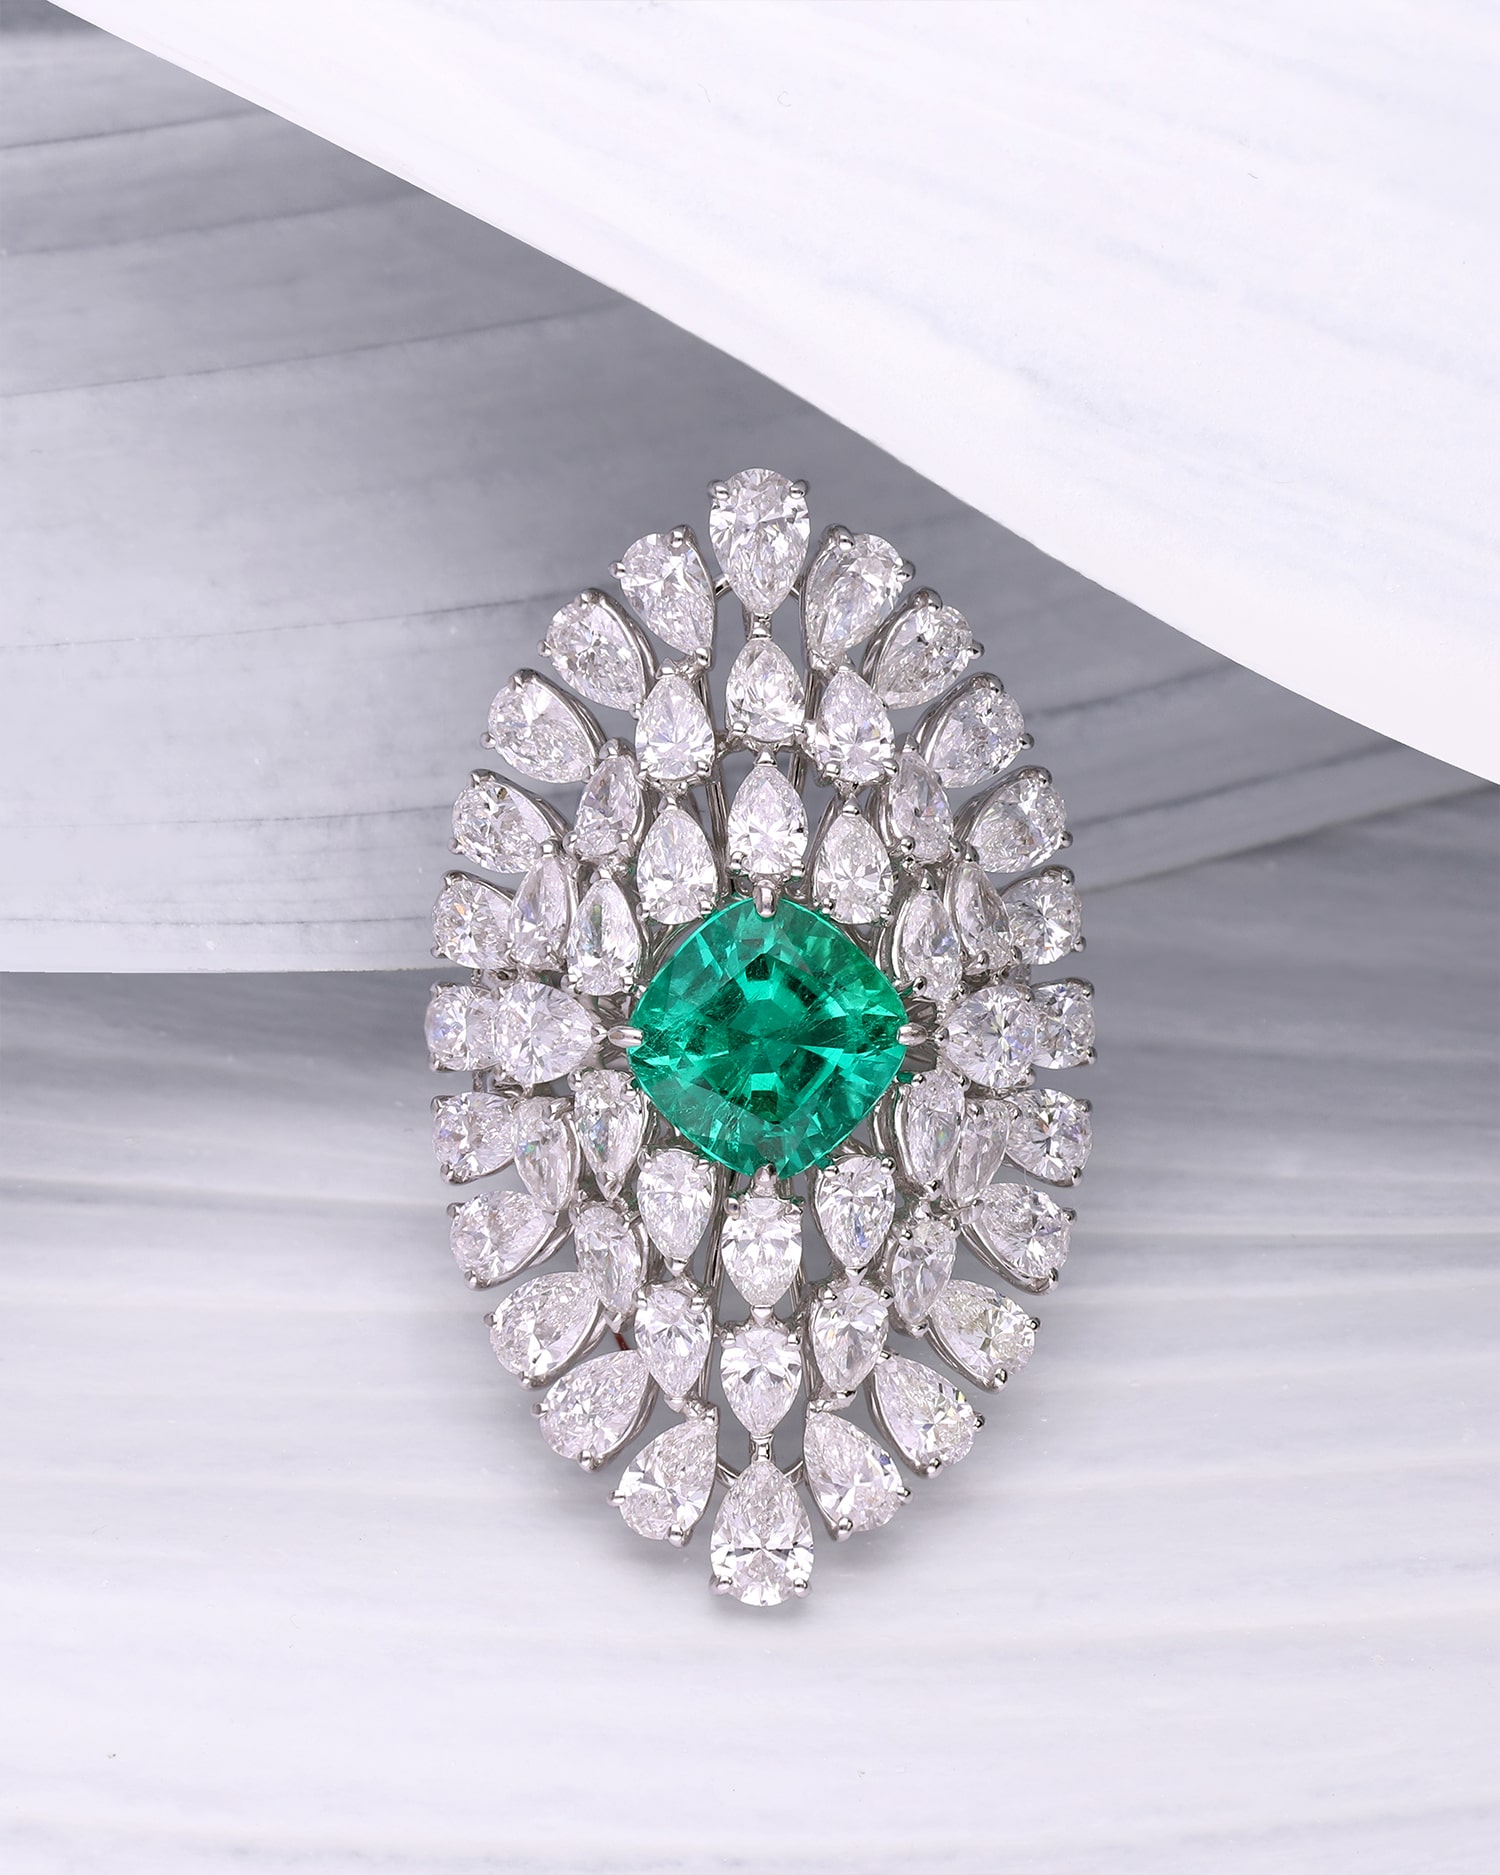 modelo con anillo de oro blanco y esmeralda verde de la coleccion drea jewelry de alta joyeria